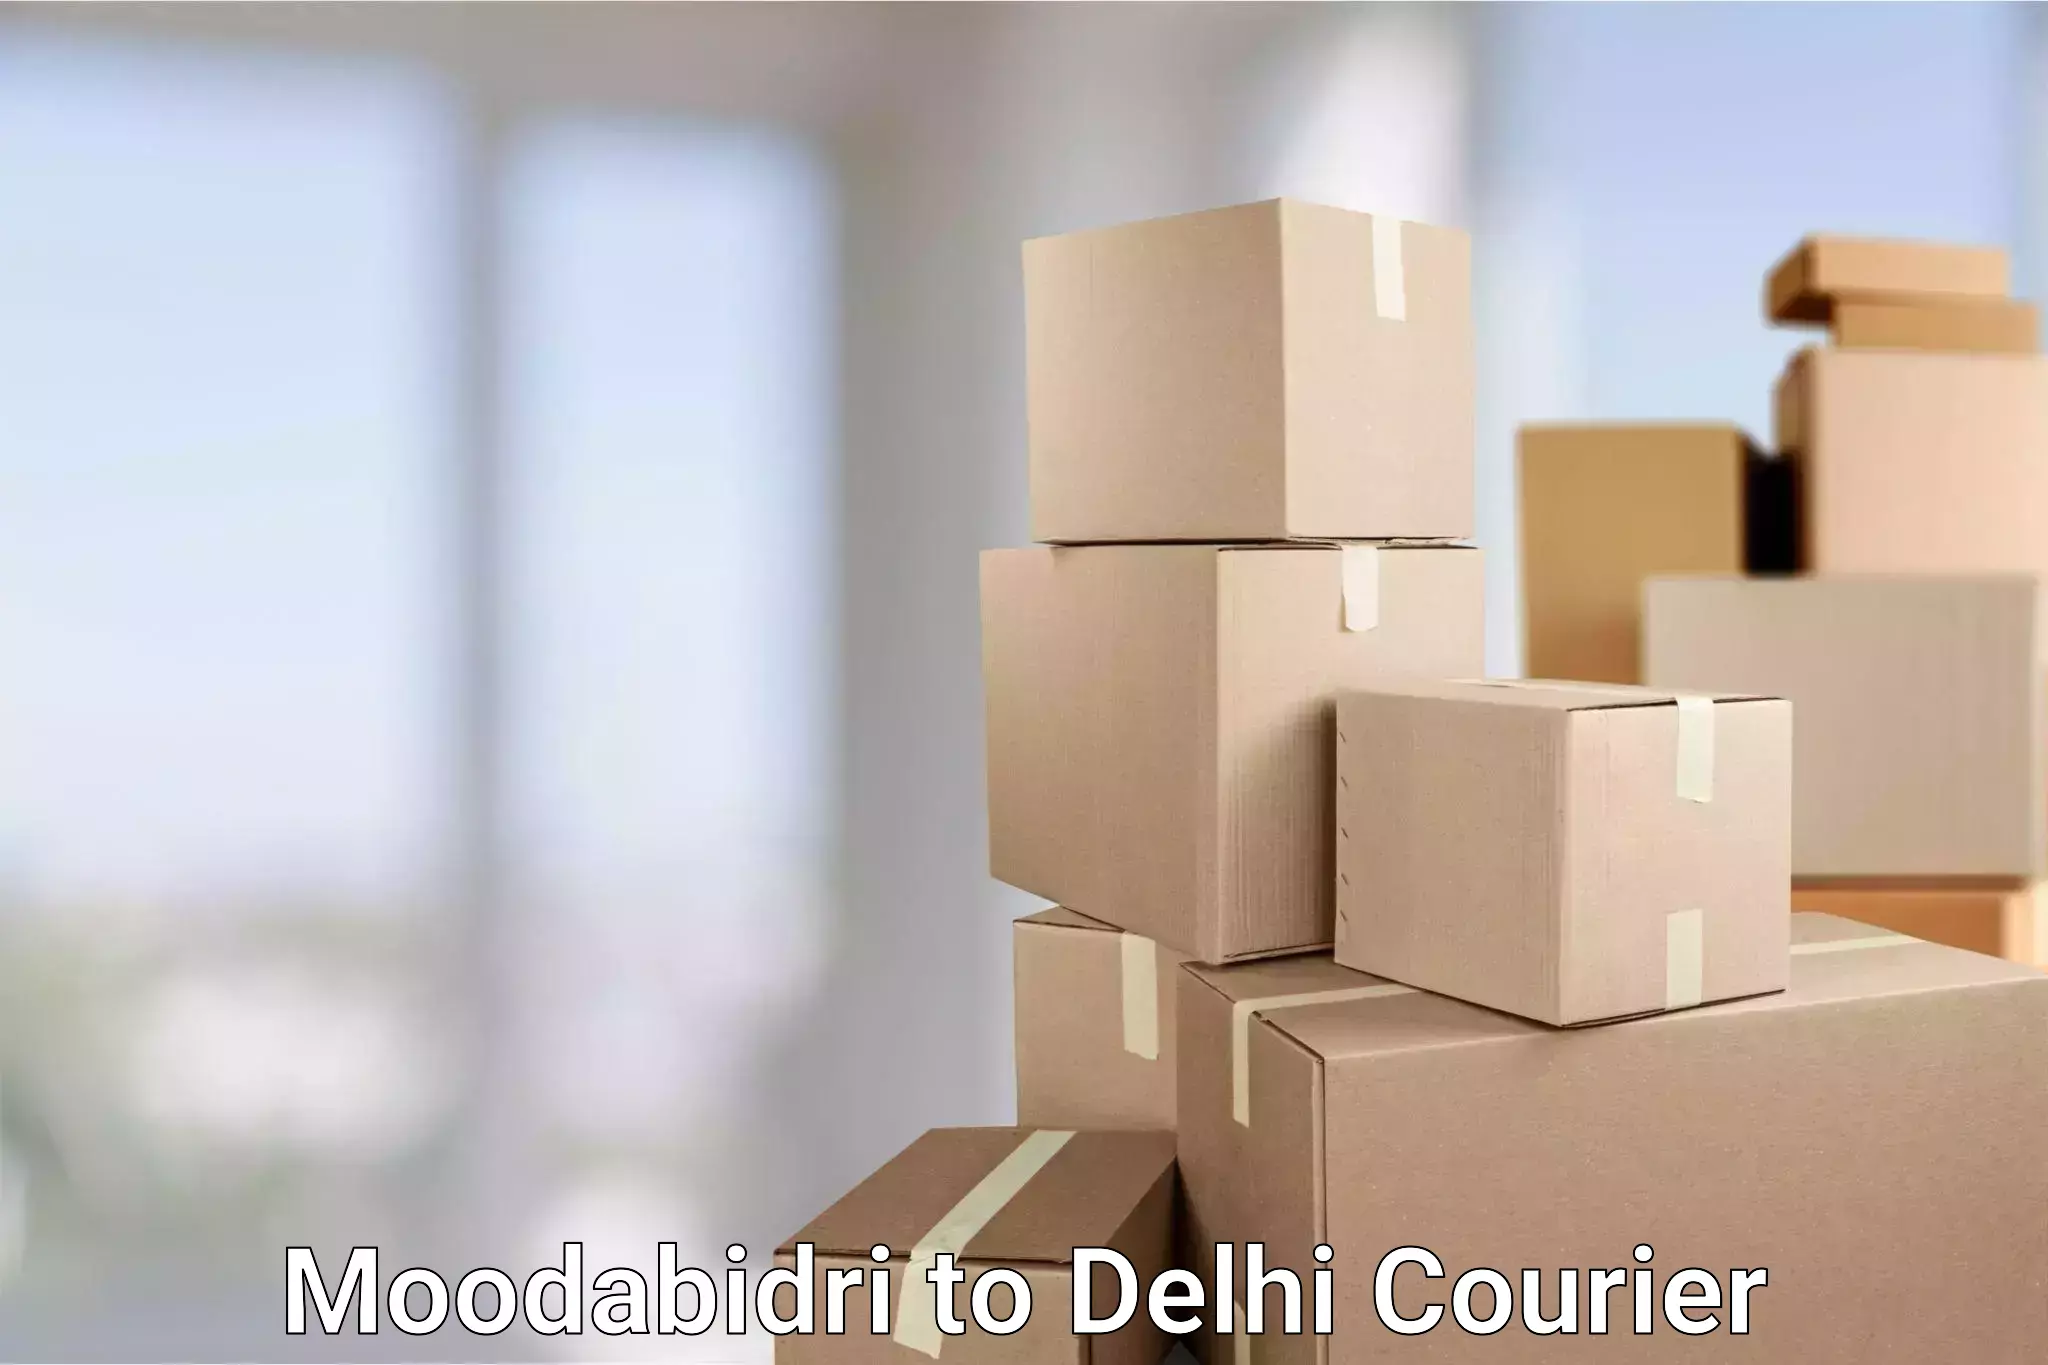 Urban courier service in Moodabidri to NIT Delhi